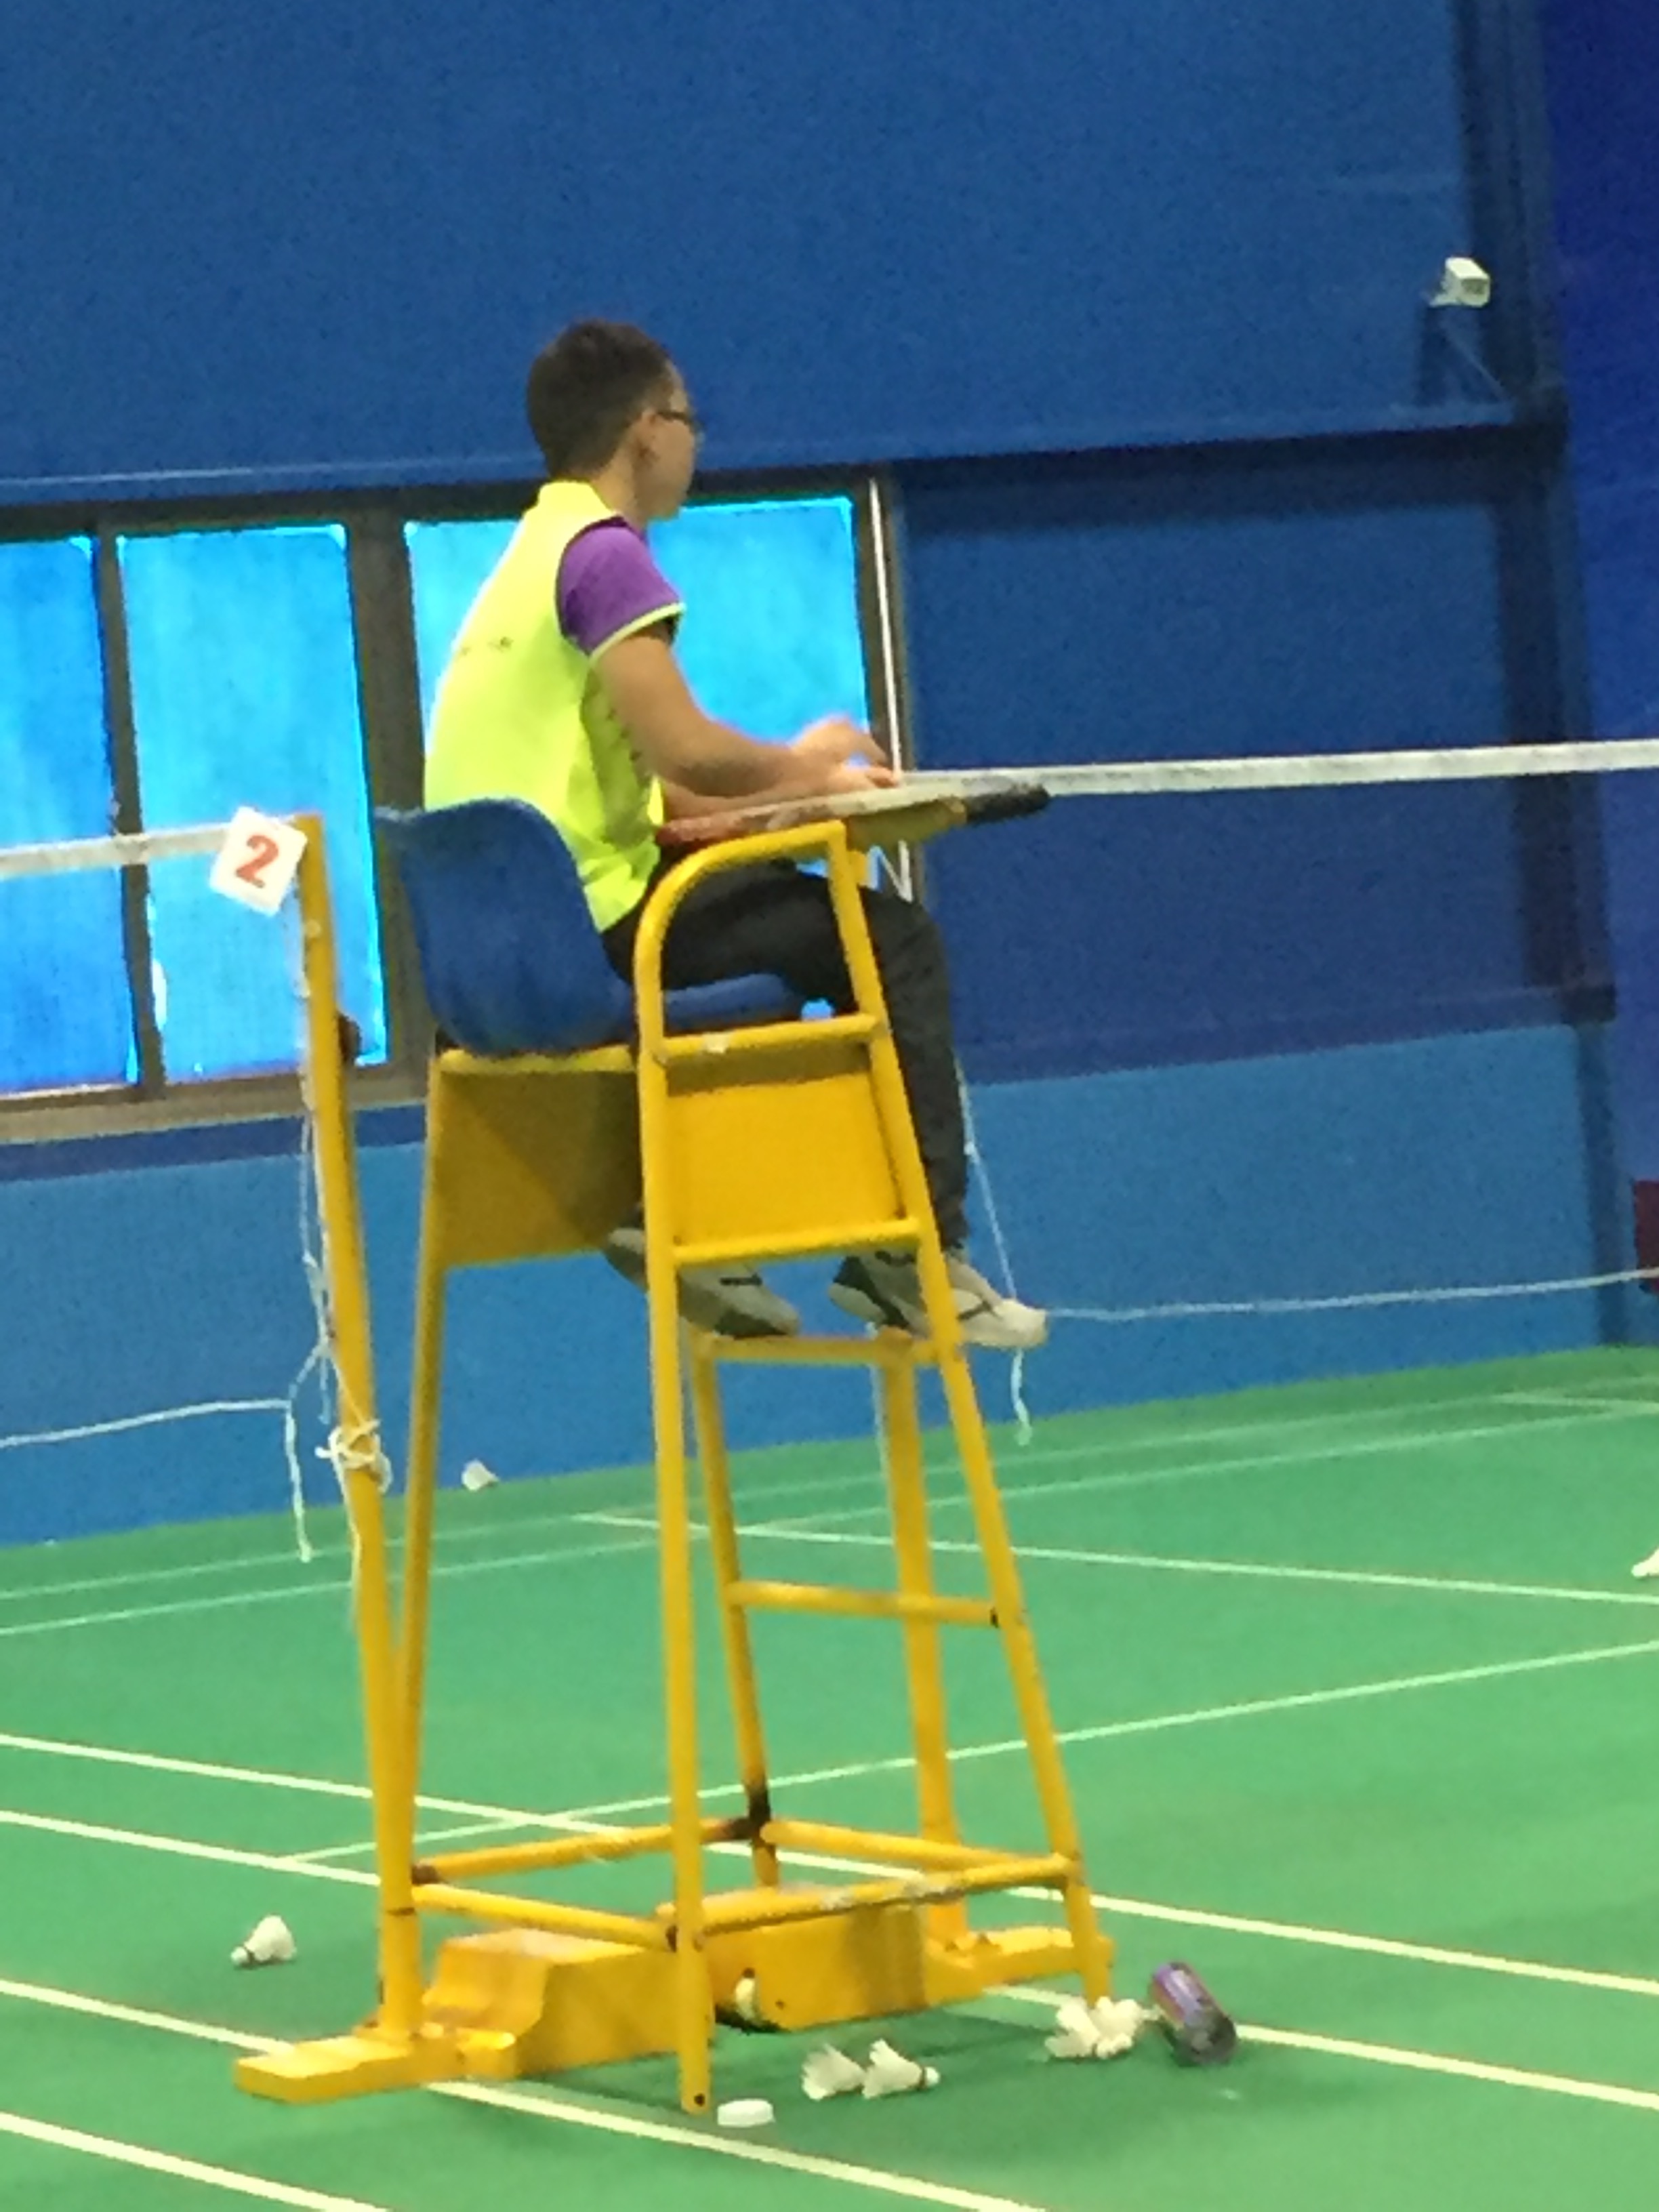 Badminton Umpire